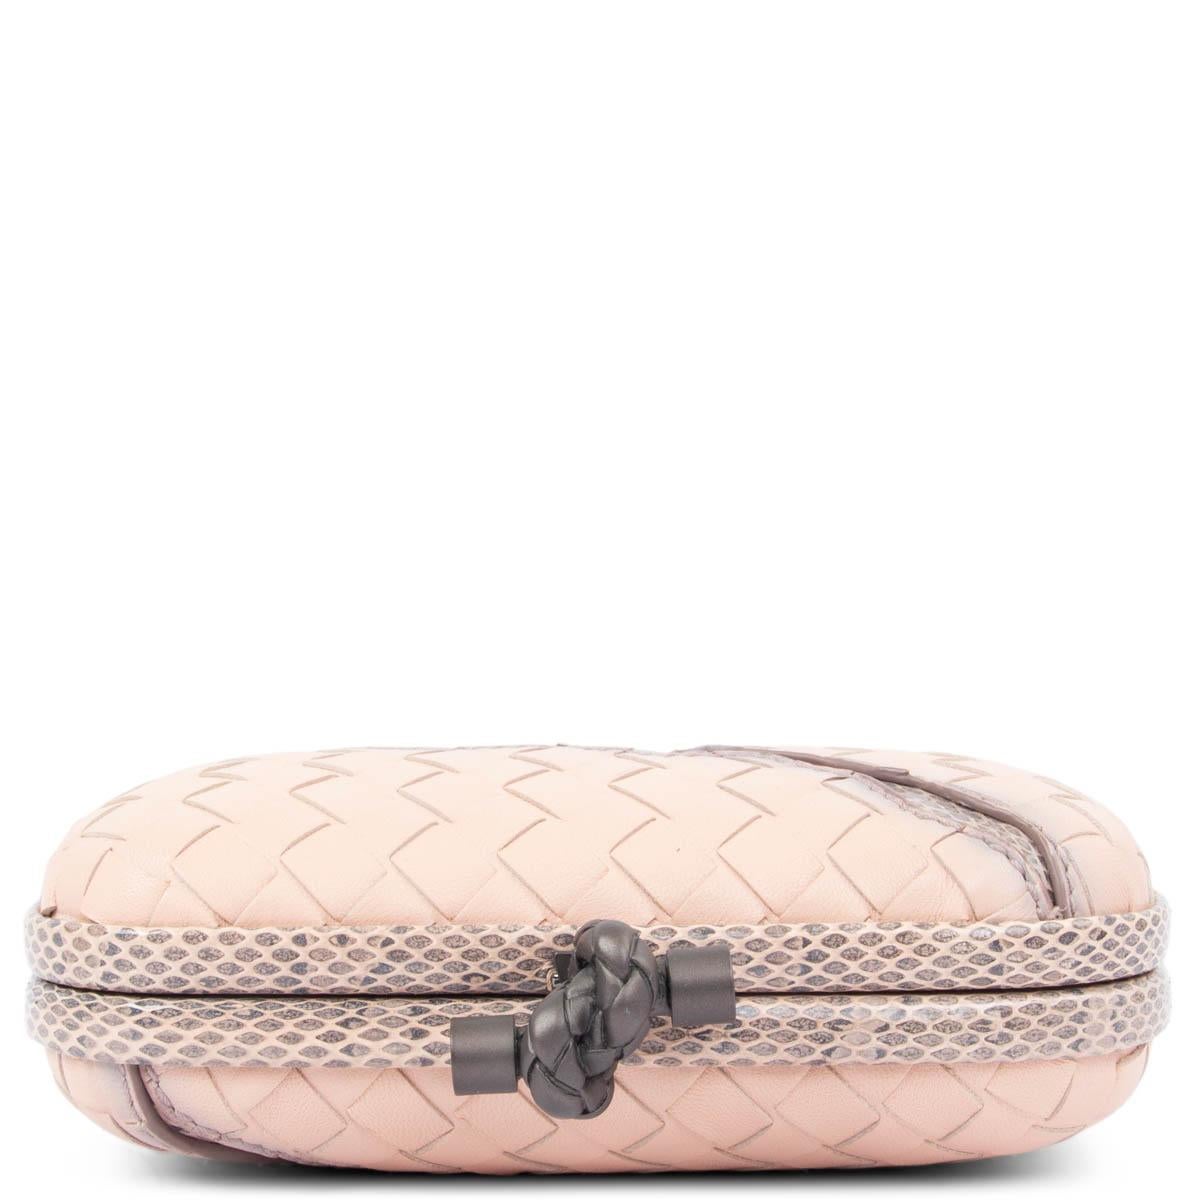 BOTTEGA VENETA pale pink leather INTRECCIATO GLIMMER KNOT SMALL Clutch Bag 1